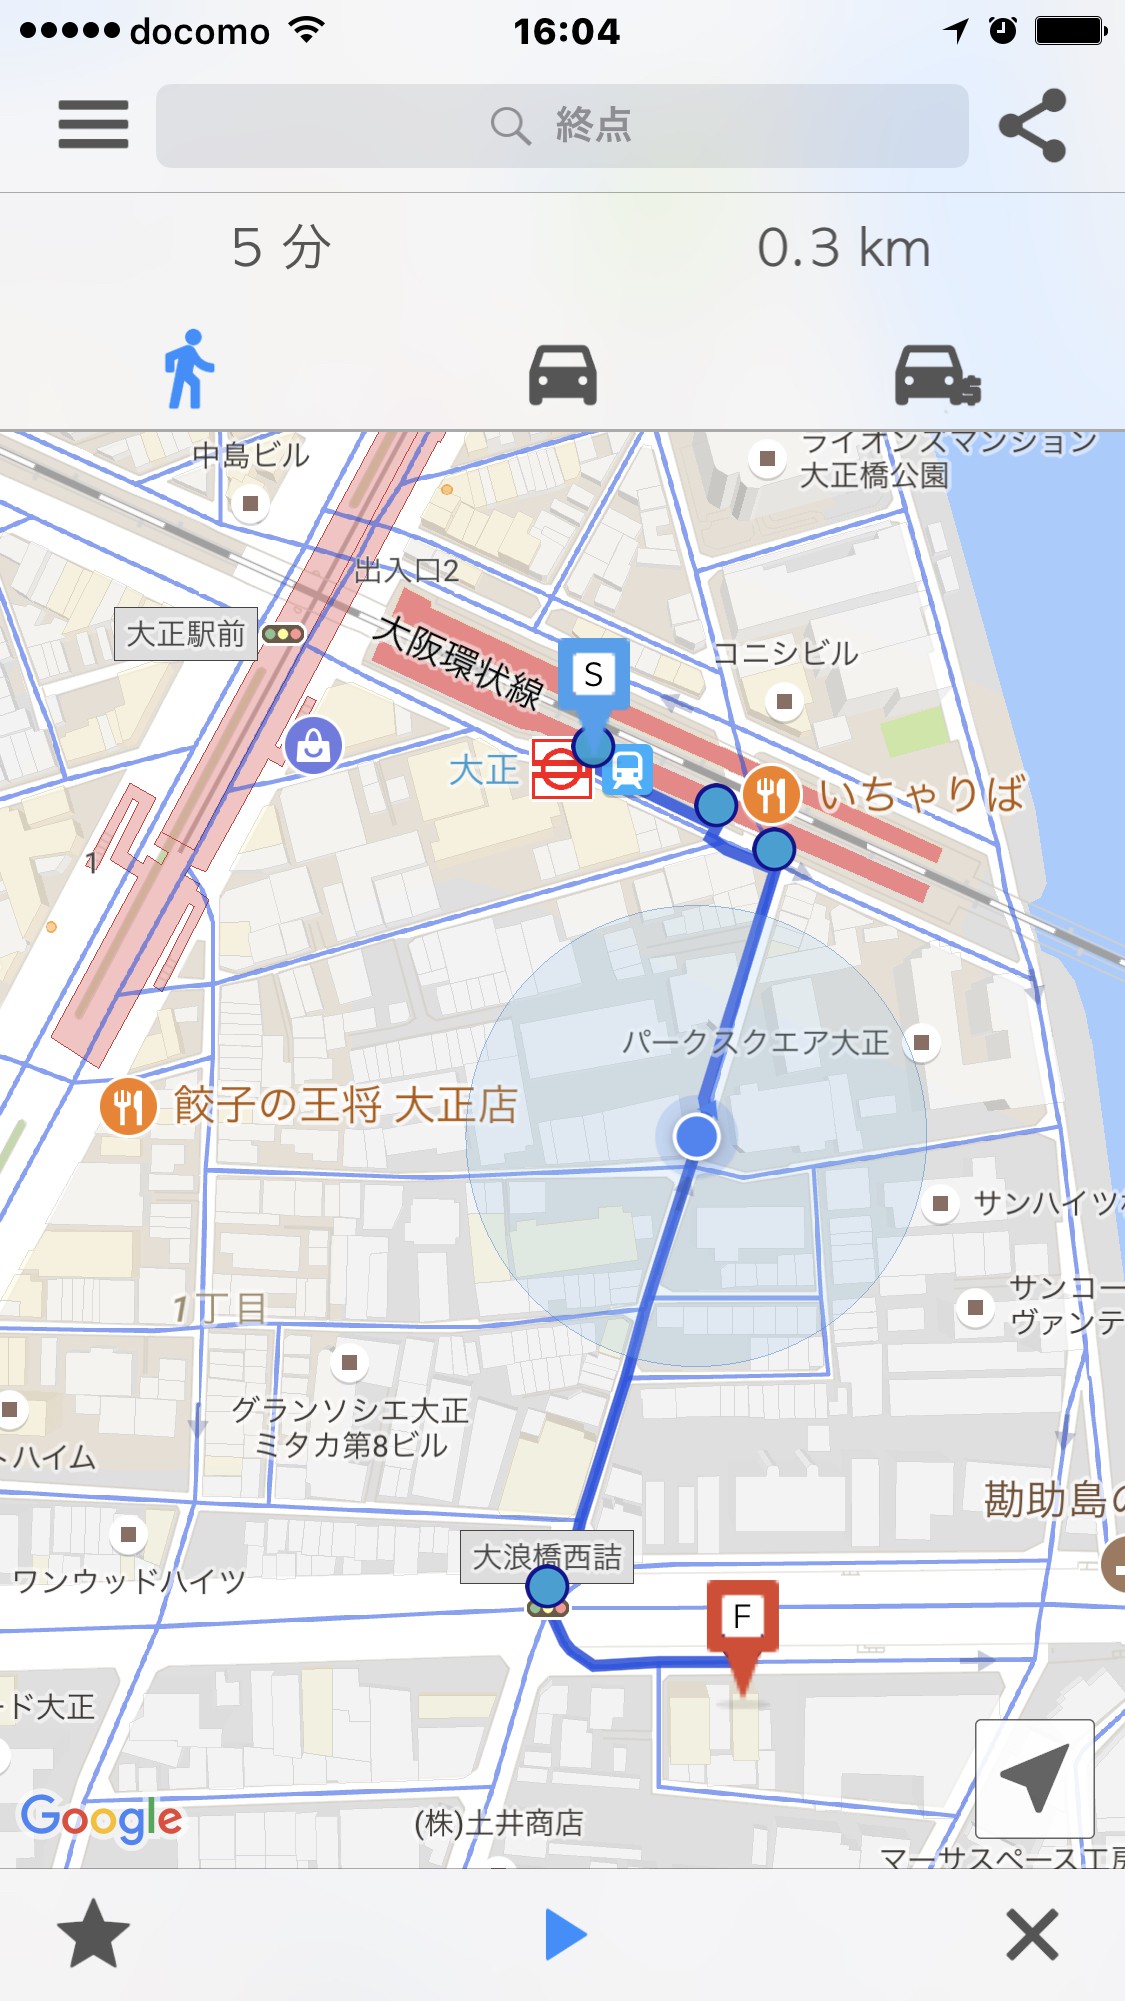 8.从关西机场乘坐JR直达航班。1前往JR大阪、日本环球影城、地铁心斋桥。距离难波15分钟车程。步行5分钟即可到达大正站（ Taisho Station ） ，步行即可到达大正站